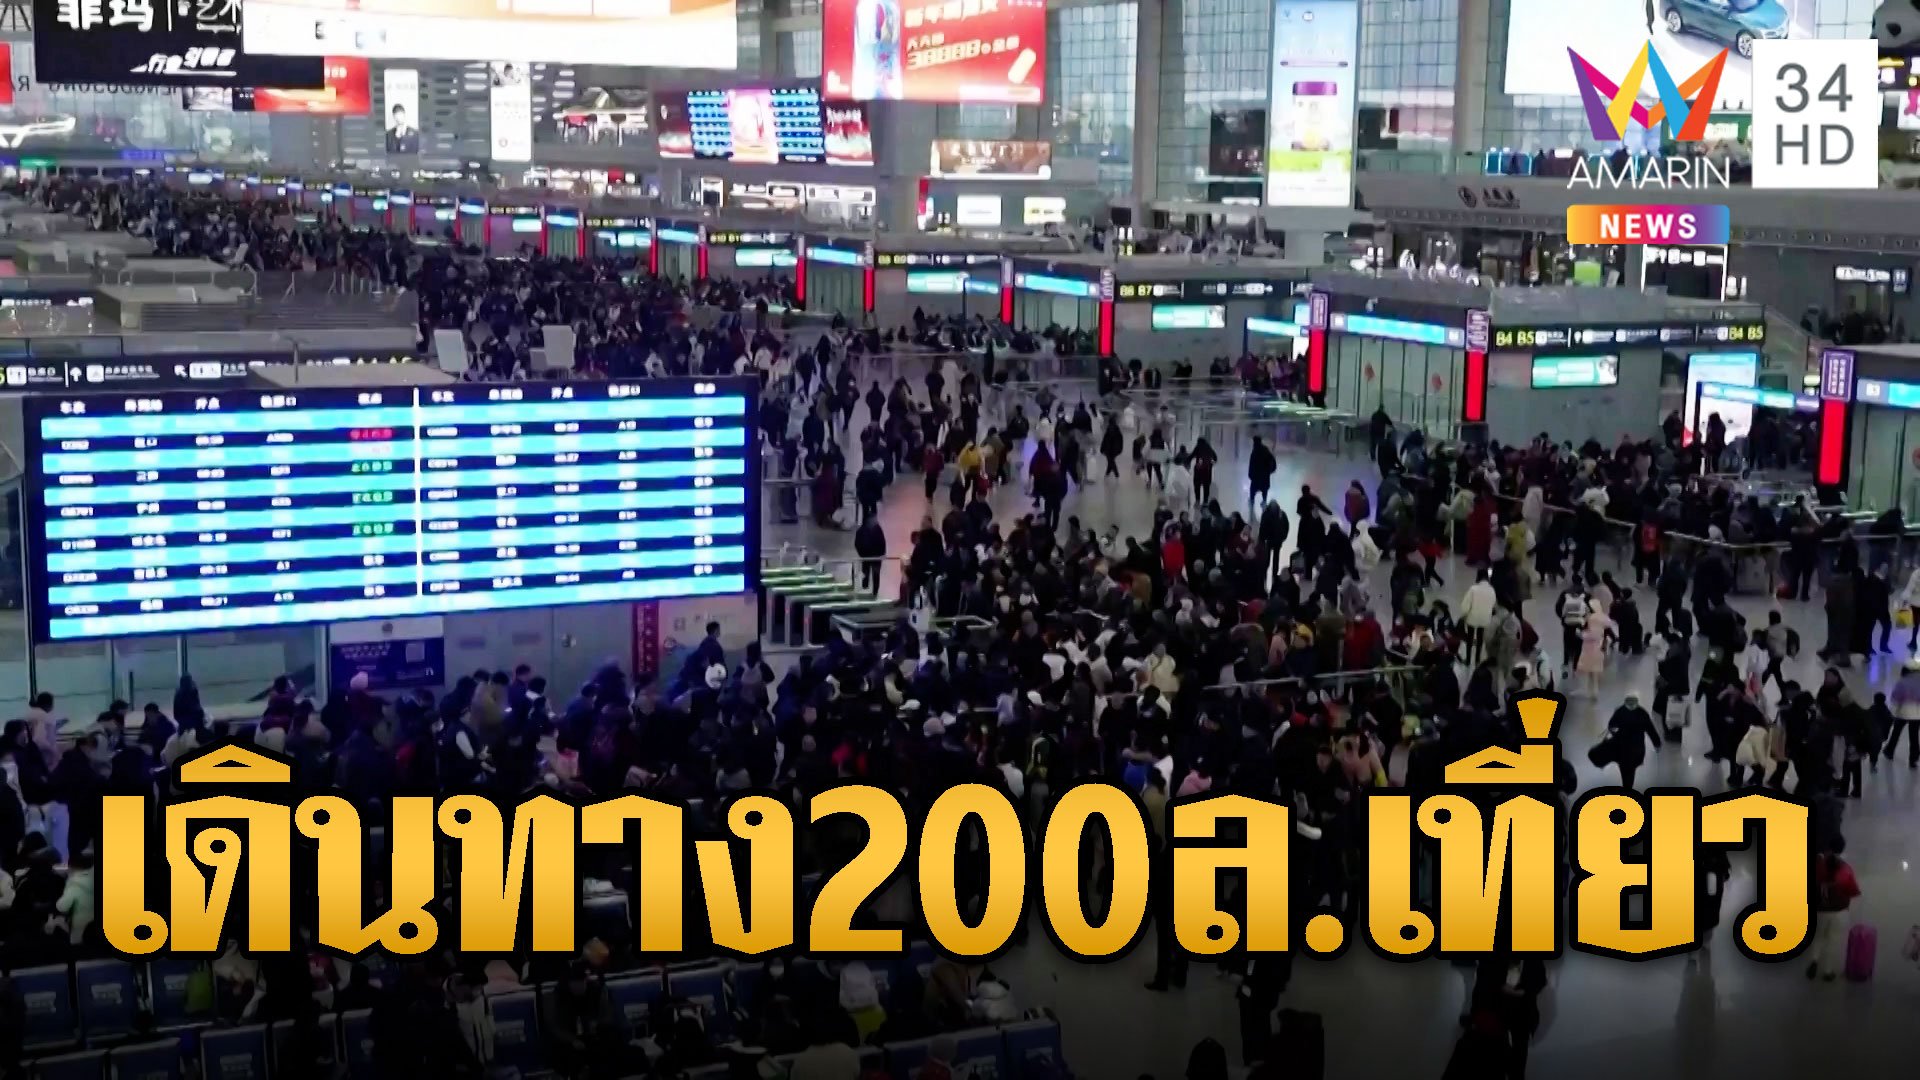 จีนคึกคัก! ปชช.เดินทาง 200 ล้านเที่ยว ก่อนเข้าสู่เทศกาลตรุษจีน | ข่าวอรุณอมรินทร์ | 30 ม.ค. 67 | AMARIN TVHD34